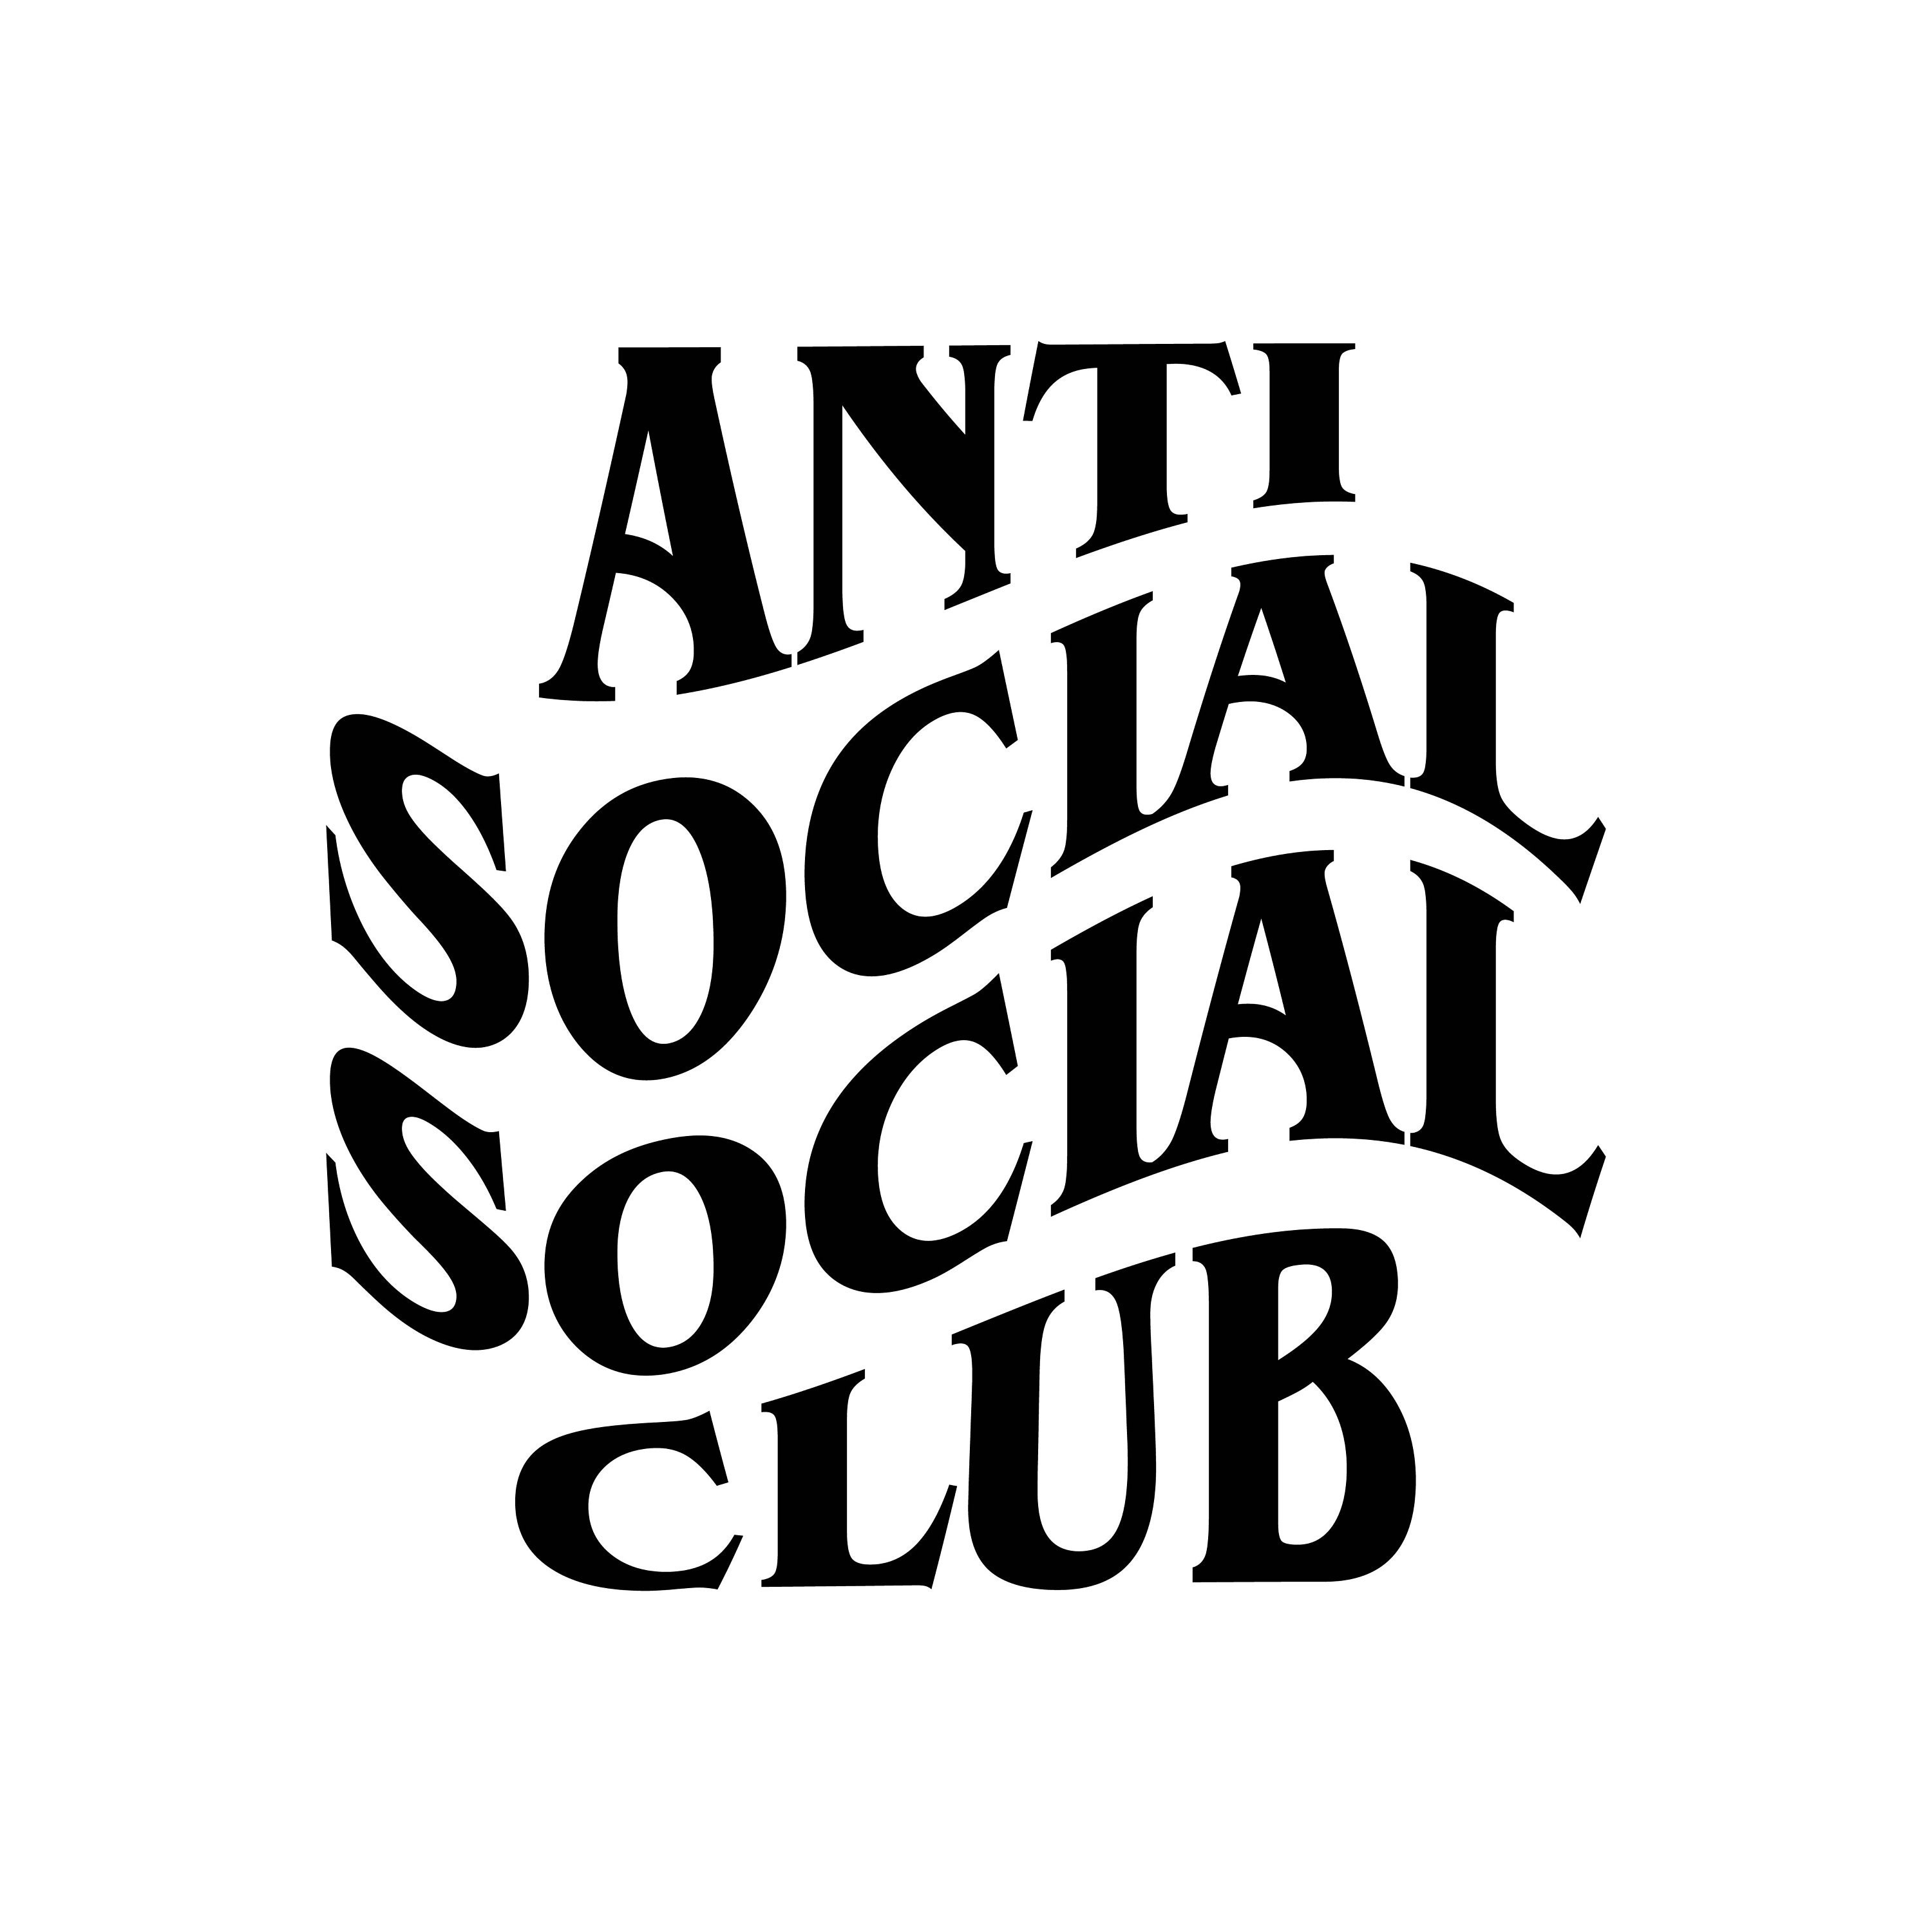 Anti Social Club - Etsy Australia